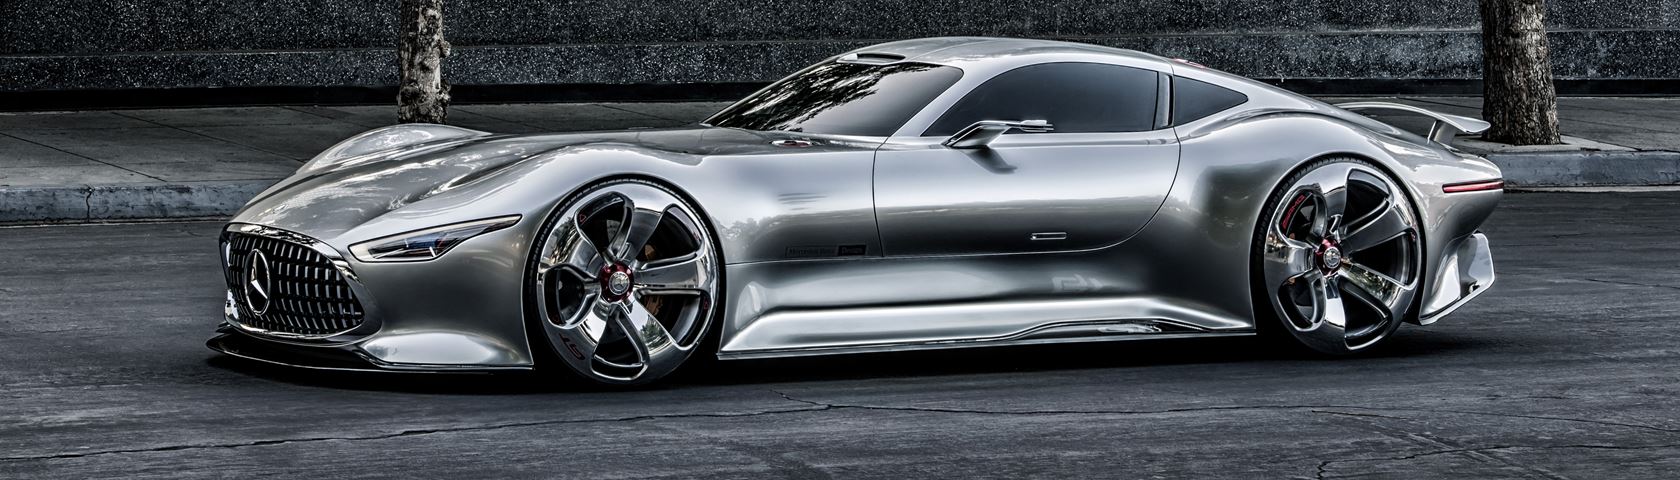 Mercedes-Benz AMG Vision Gran Turismo Concept 2013 #2